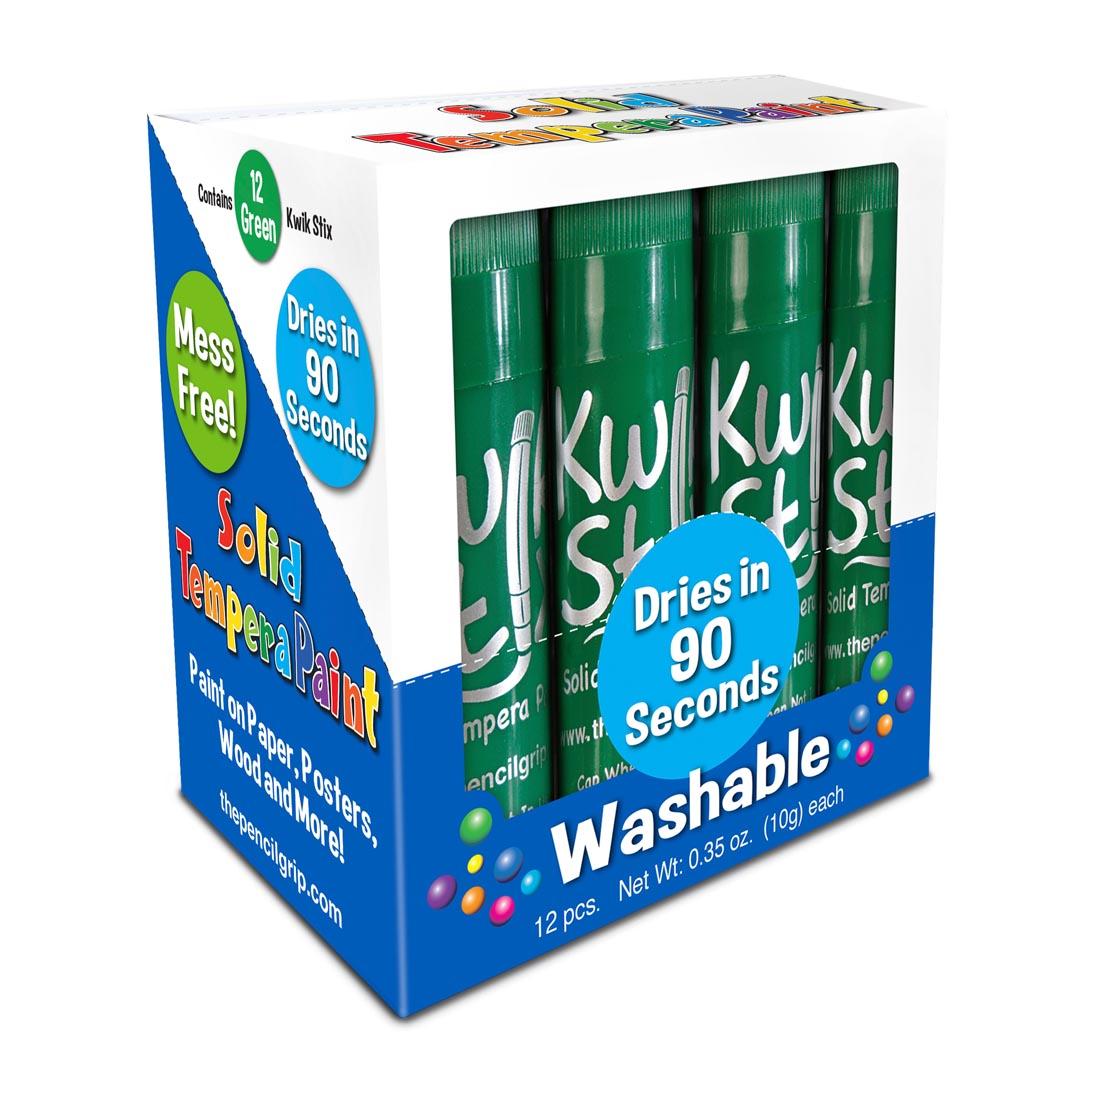 Box of Kwik Stix Solid Tempera Paint Green Refills